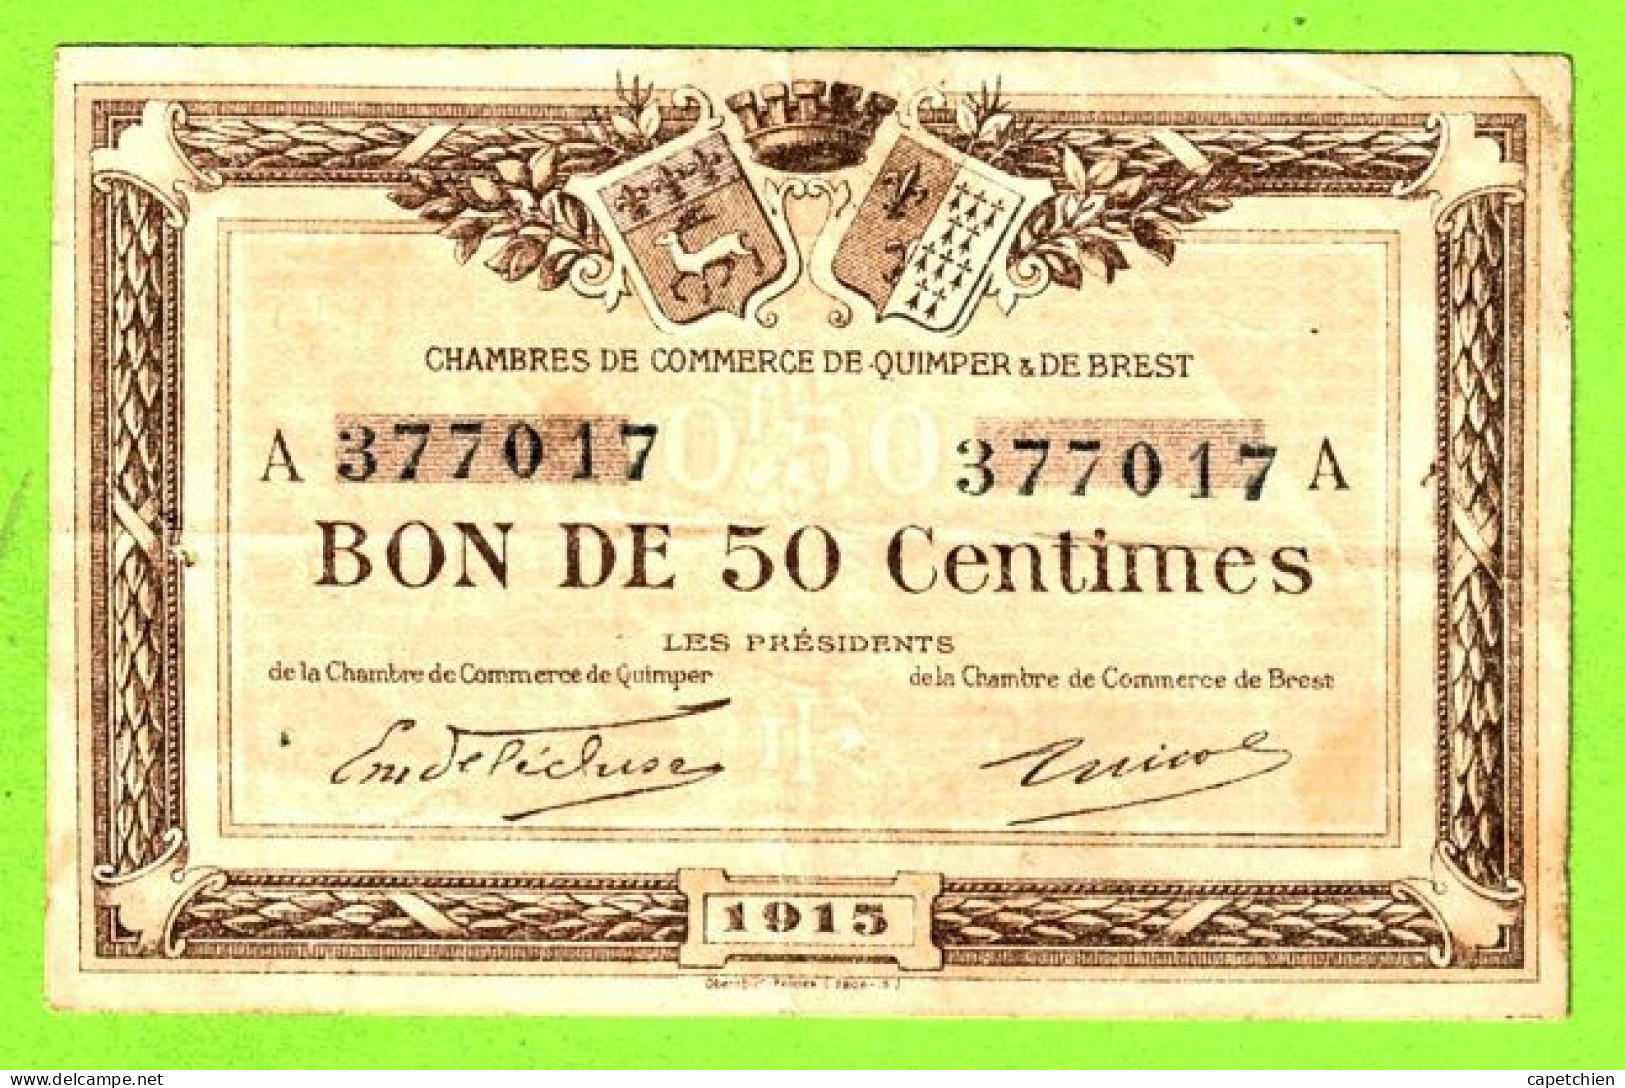 FRANCE/ CHAMBRES DE COMMERCE QUIMPER & BREST/ BON De 50 CENT. / 1915  377017 SERIE A - Chambre De Commerce